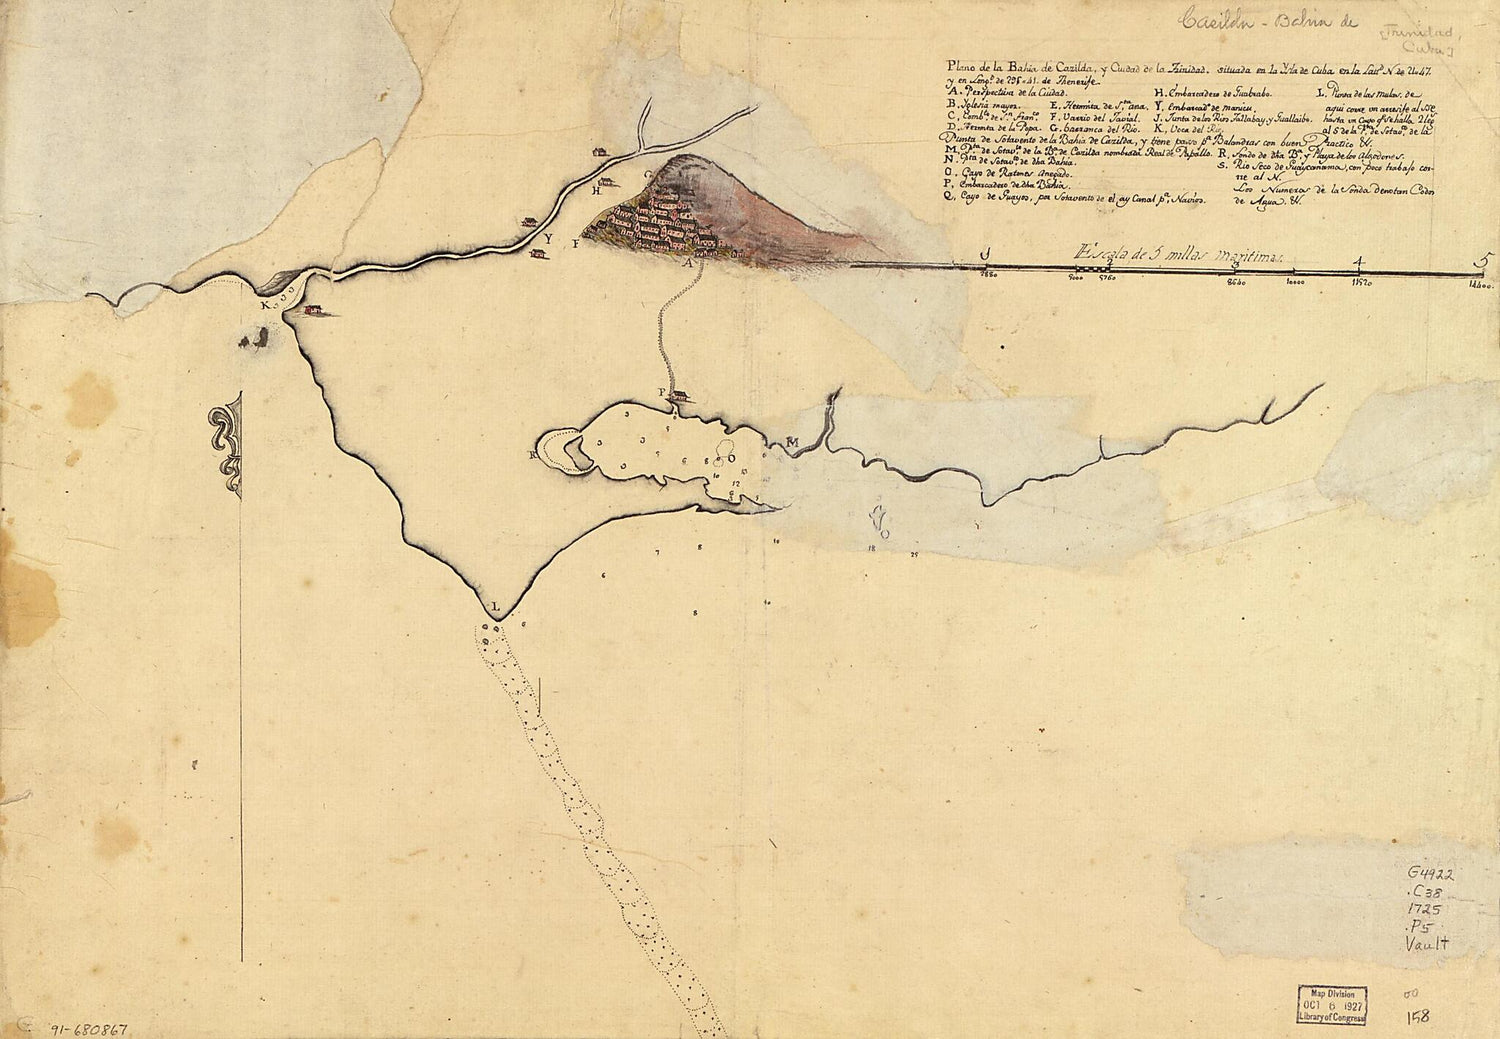 This old map of Plano De La Bahía De Cazilda Y Ciudad De La Trinidad Situada En La Ysla De Cuba En La Lattd. N. De 21ʺ47 Y En Longd. De 295ʺ41 De Thenerife from 1725 was created by  in 1725